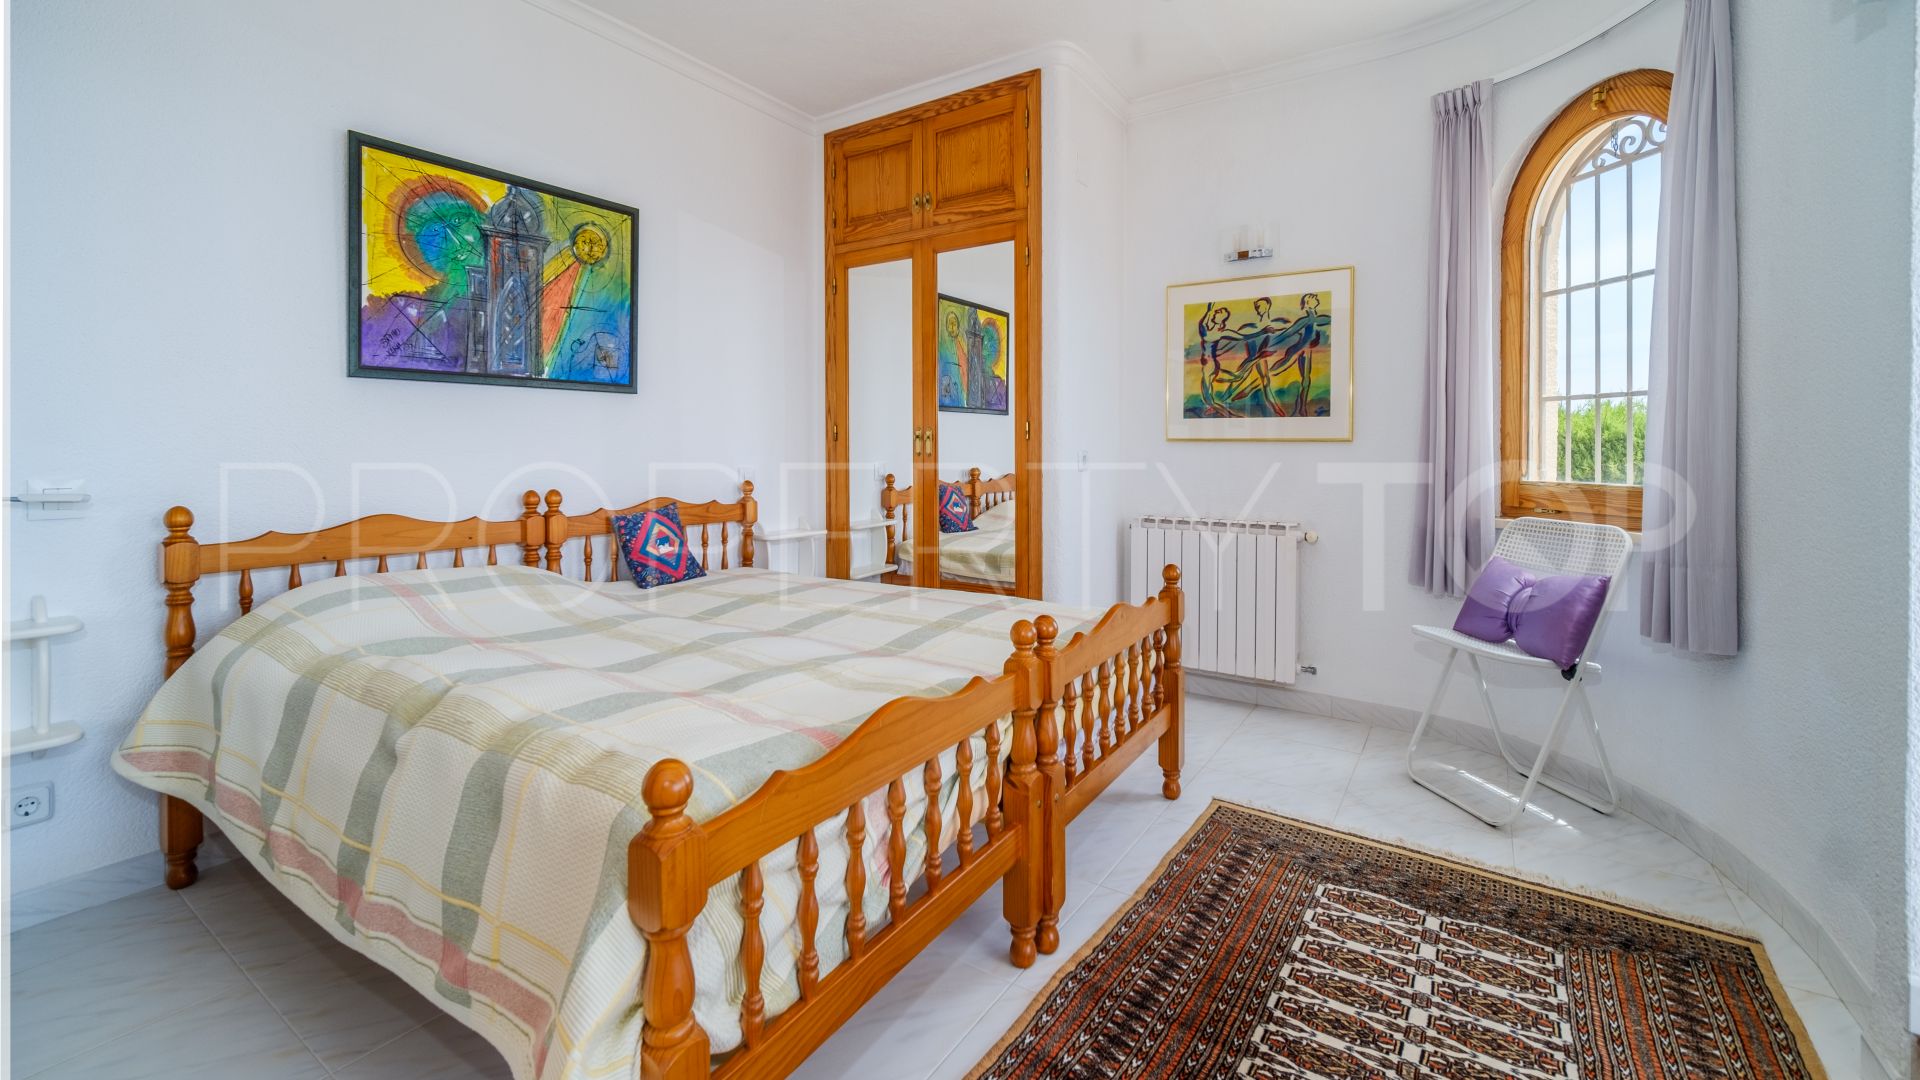 4 bedrooms villa in La Corona for sale